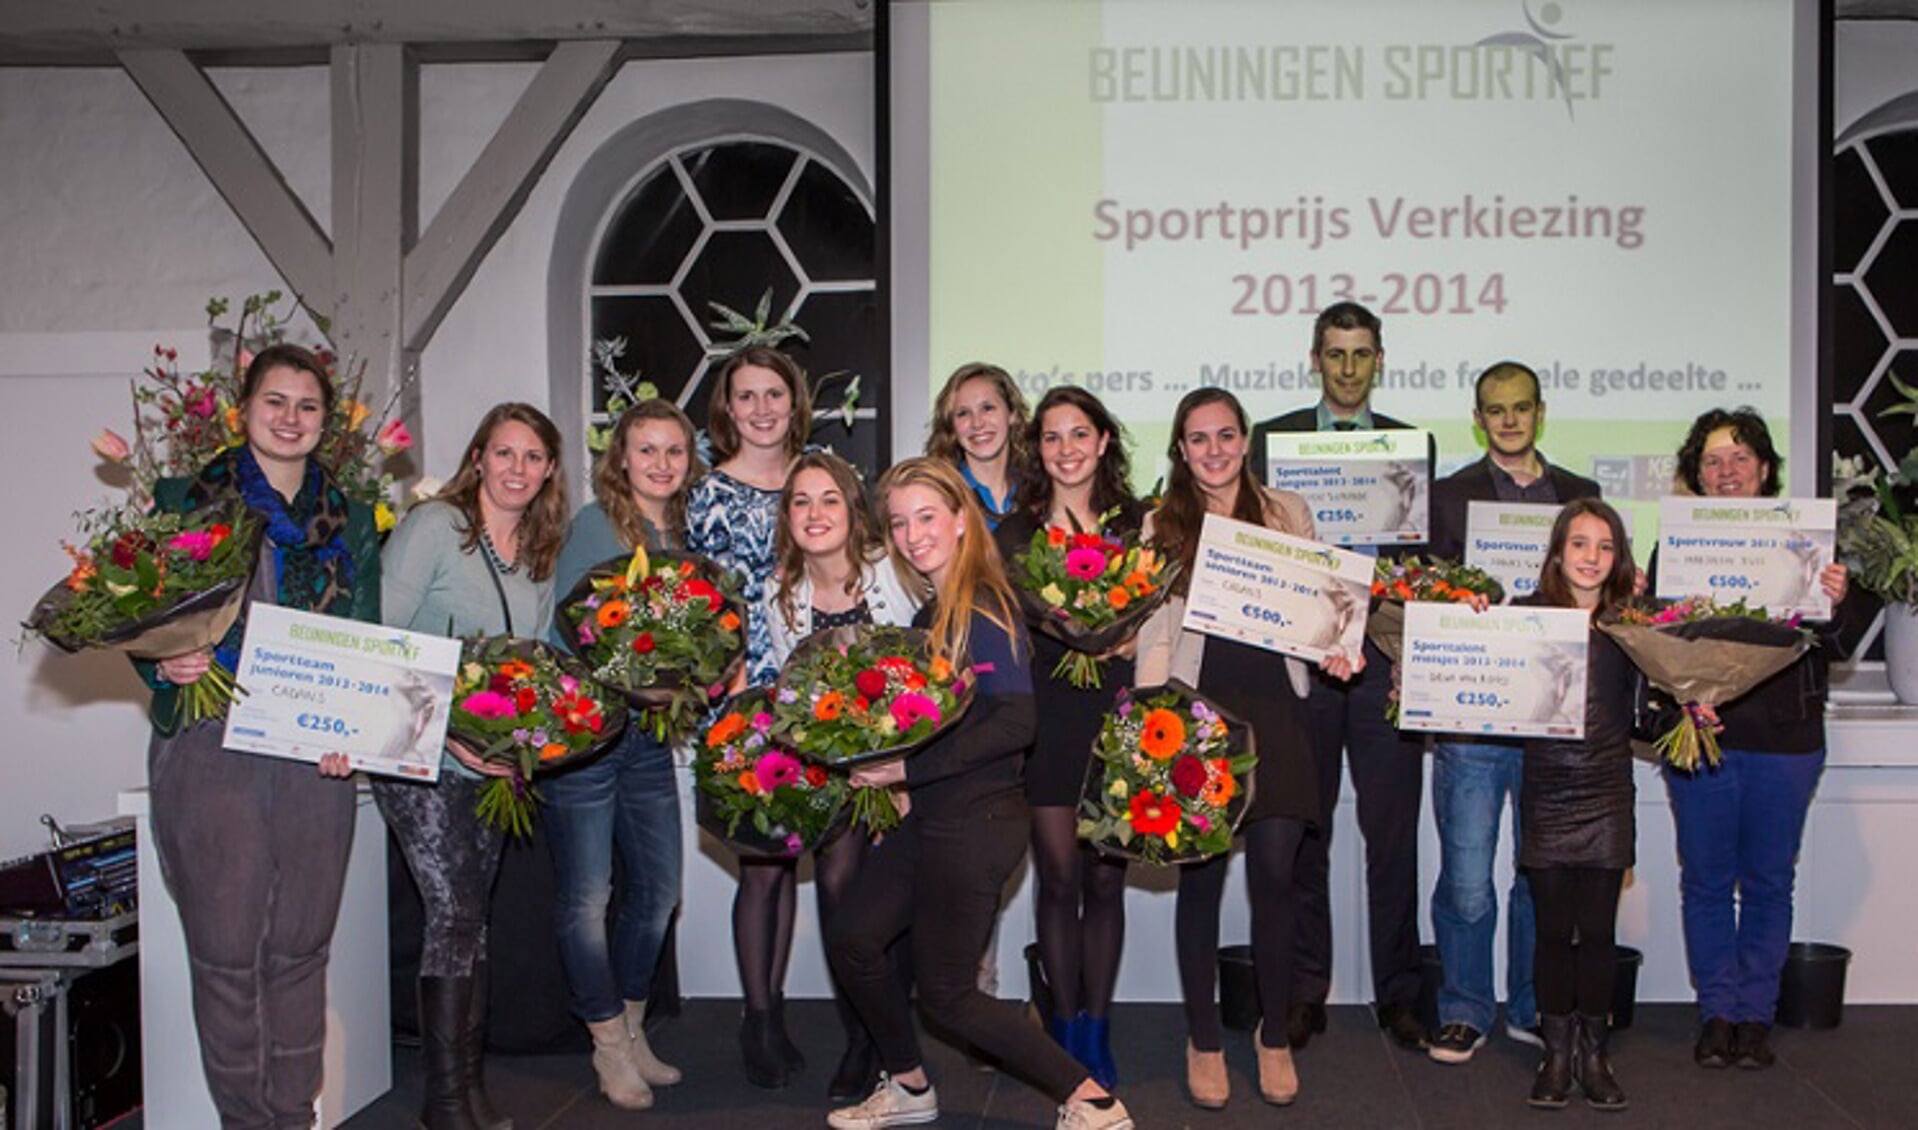 De winnaars van de Sportprijs 2013-2014.